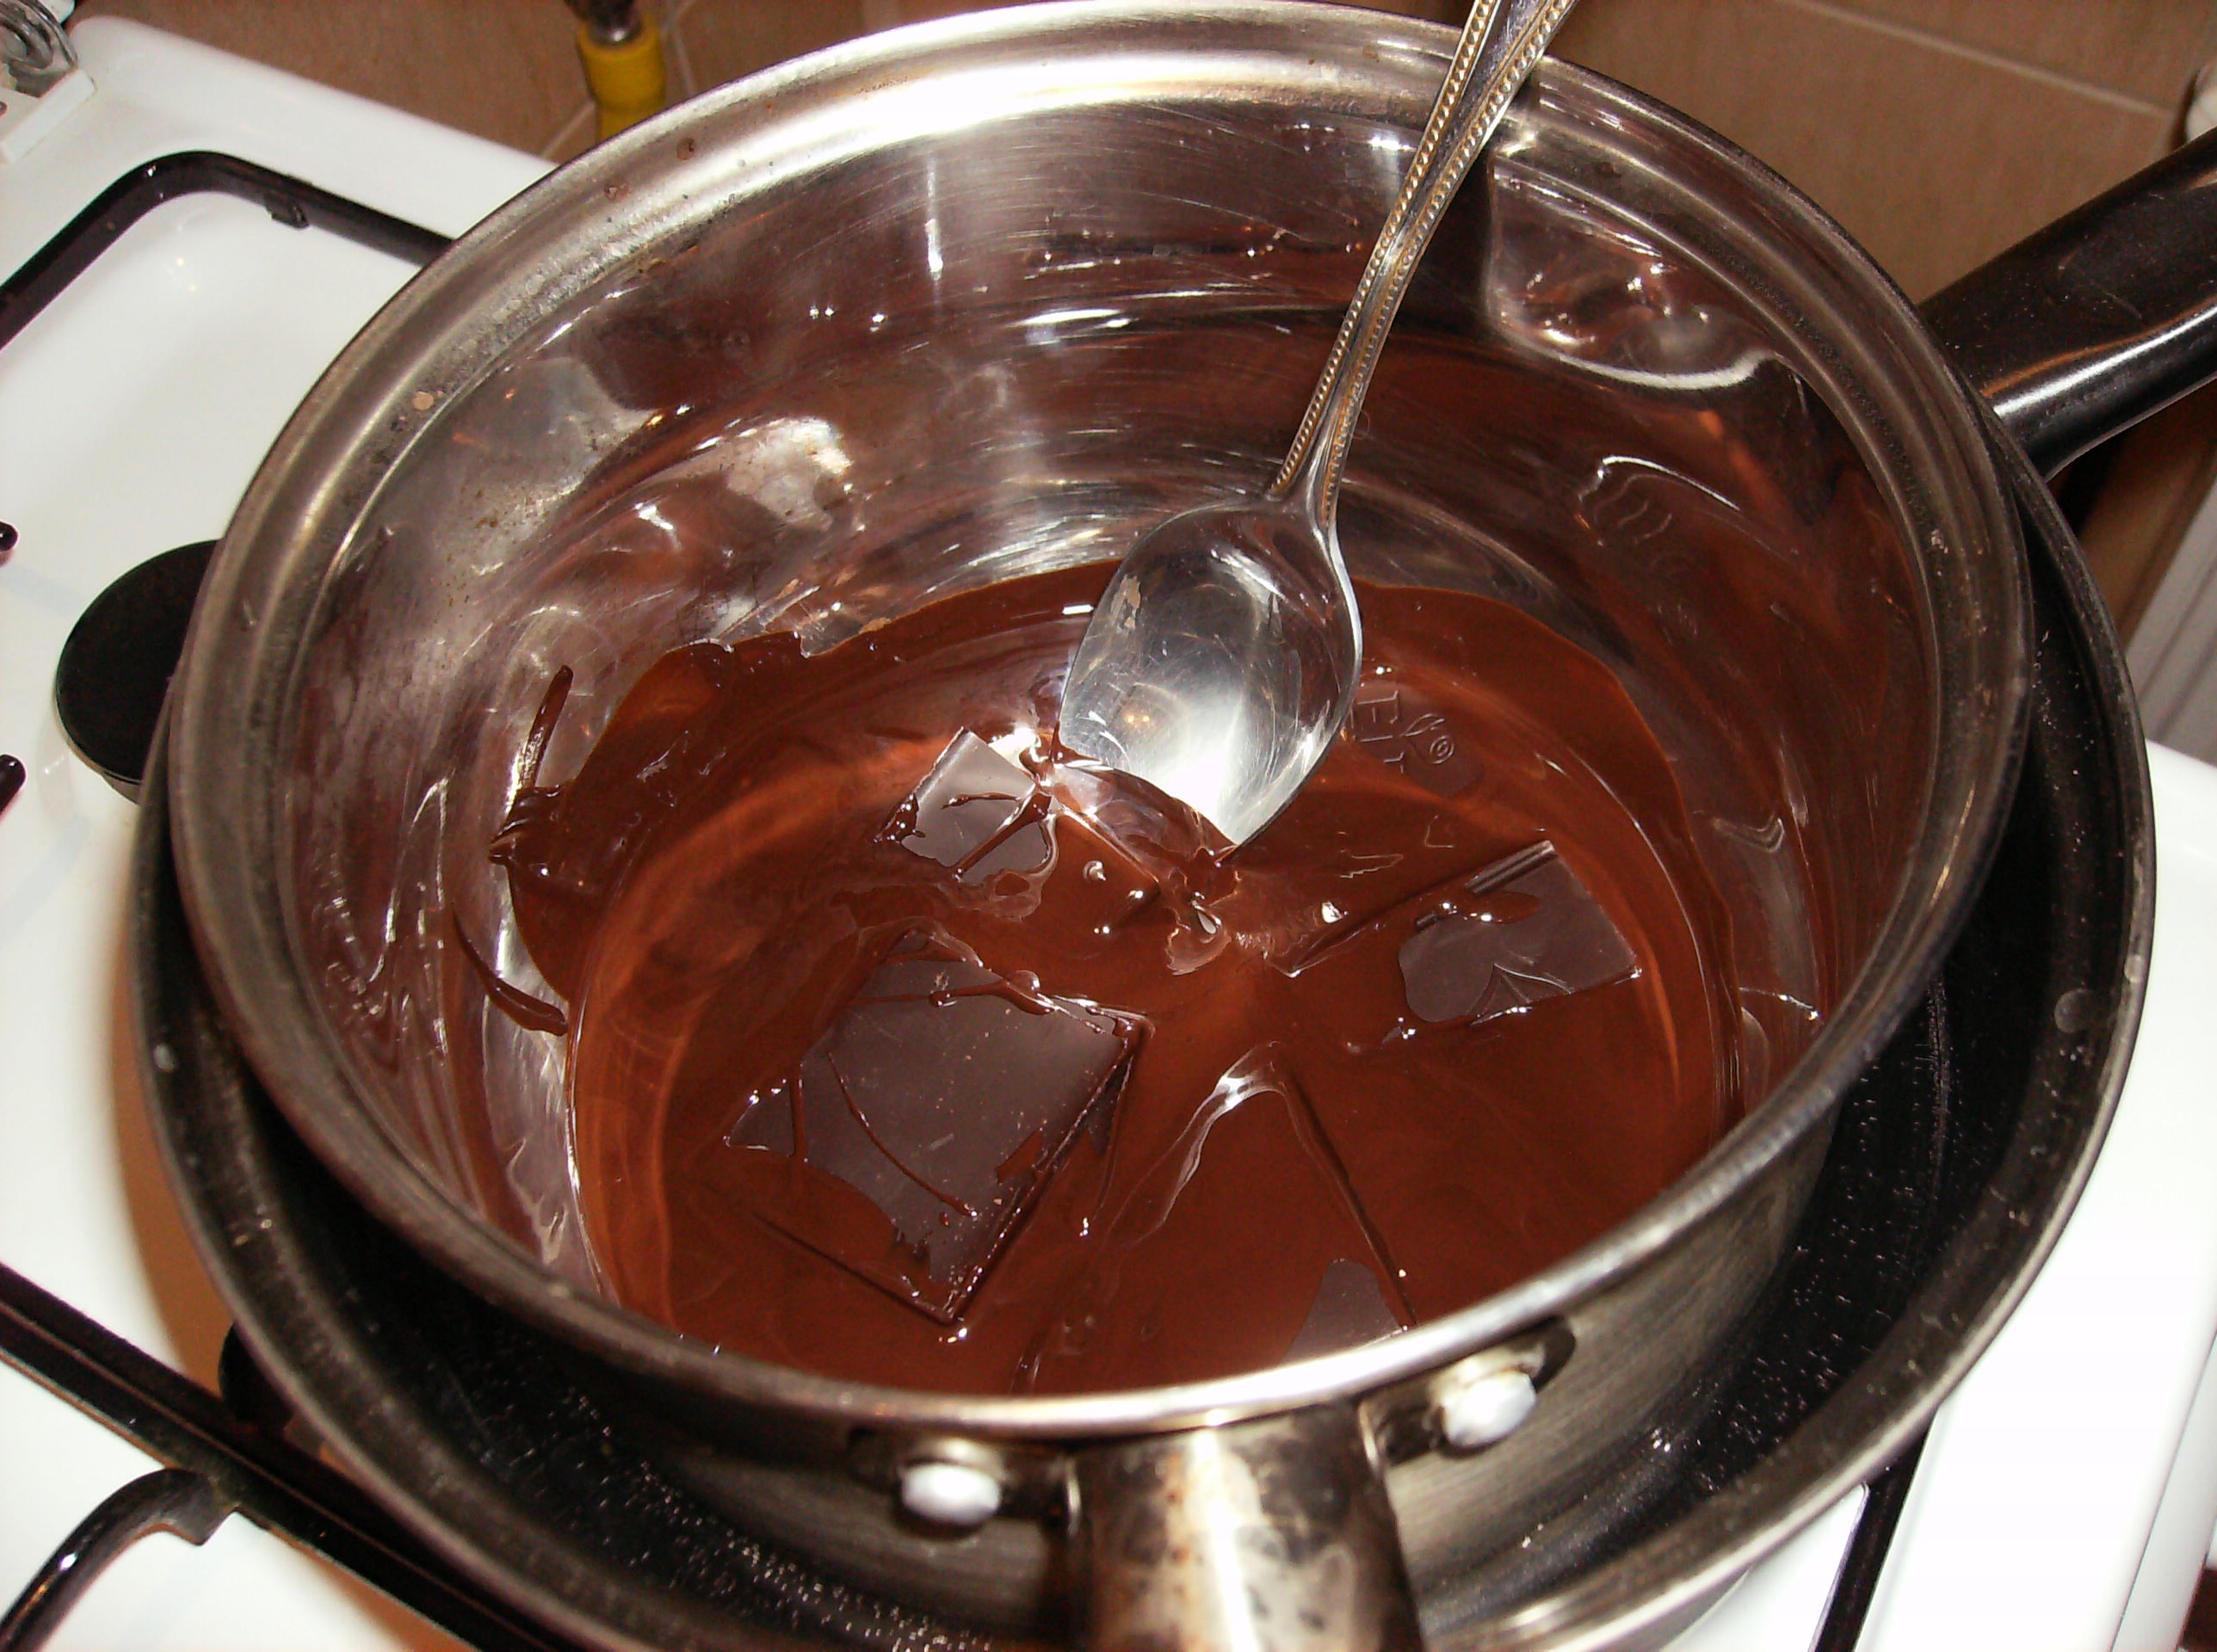 Tort de ciocolata. Reteta nr. 200